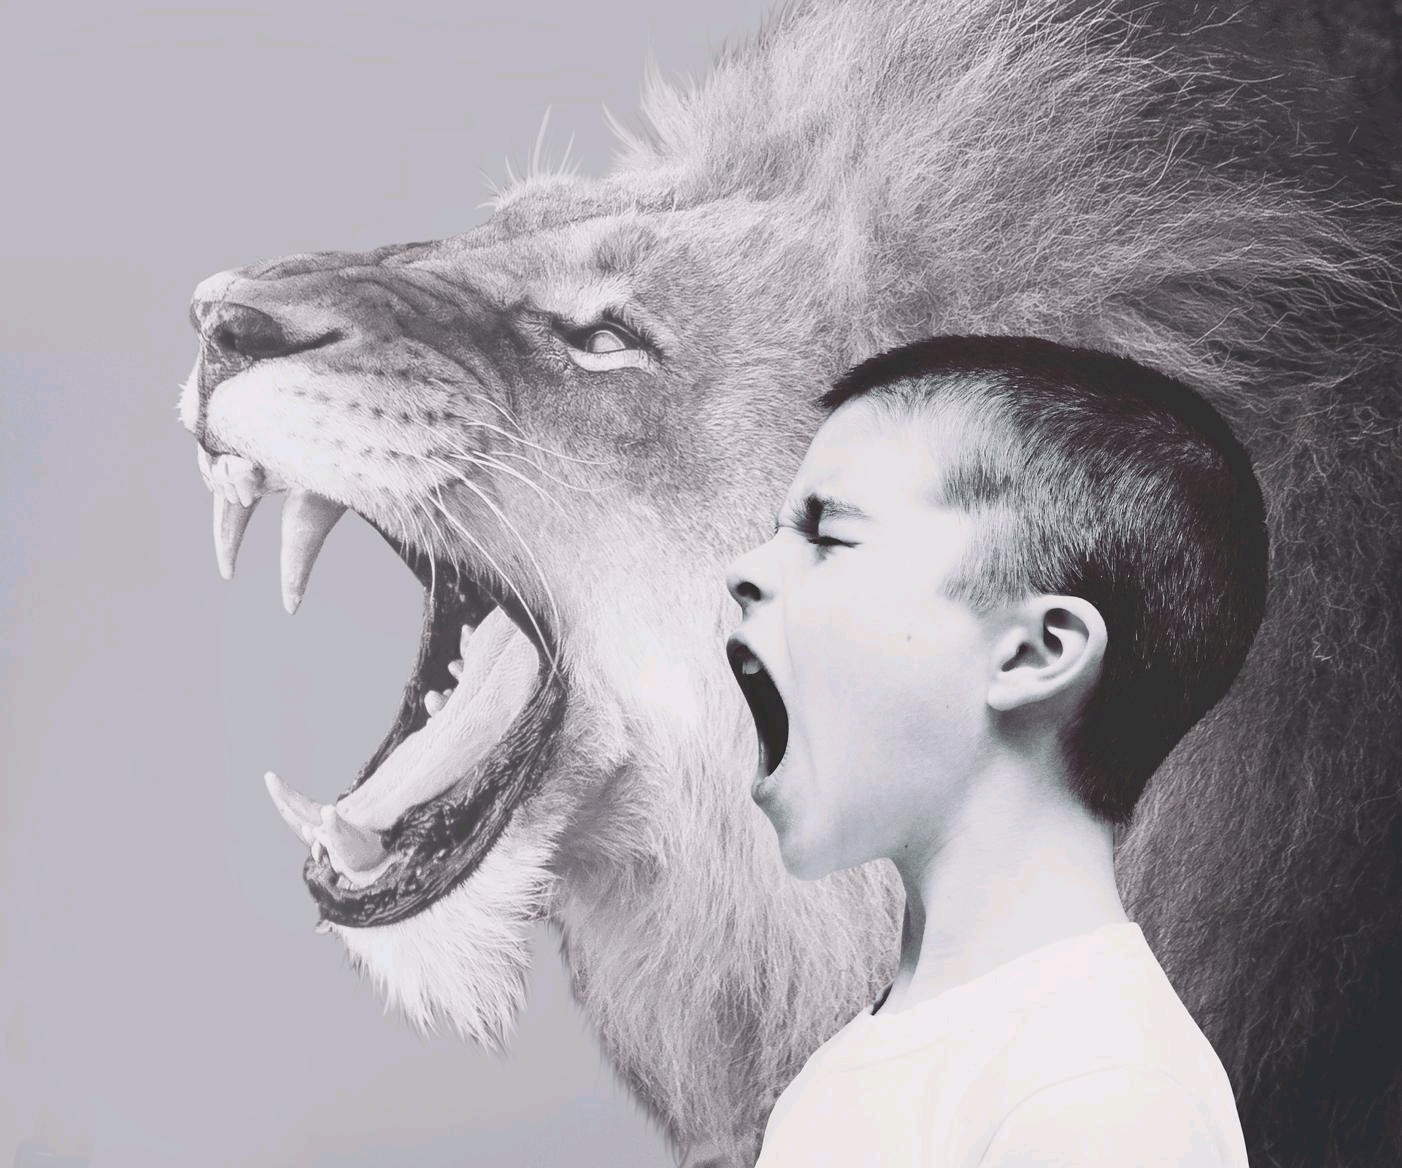 Löwe und Kind brüllen - Weiterbildungslehrgang Kinderpsychodrama